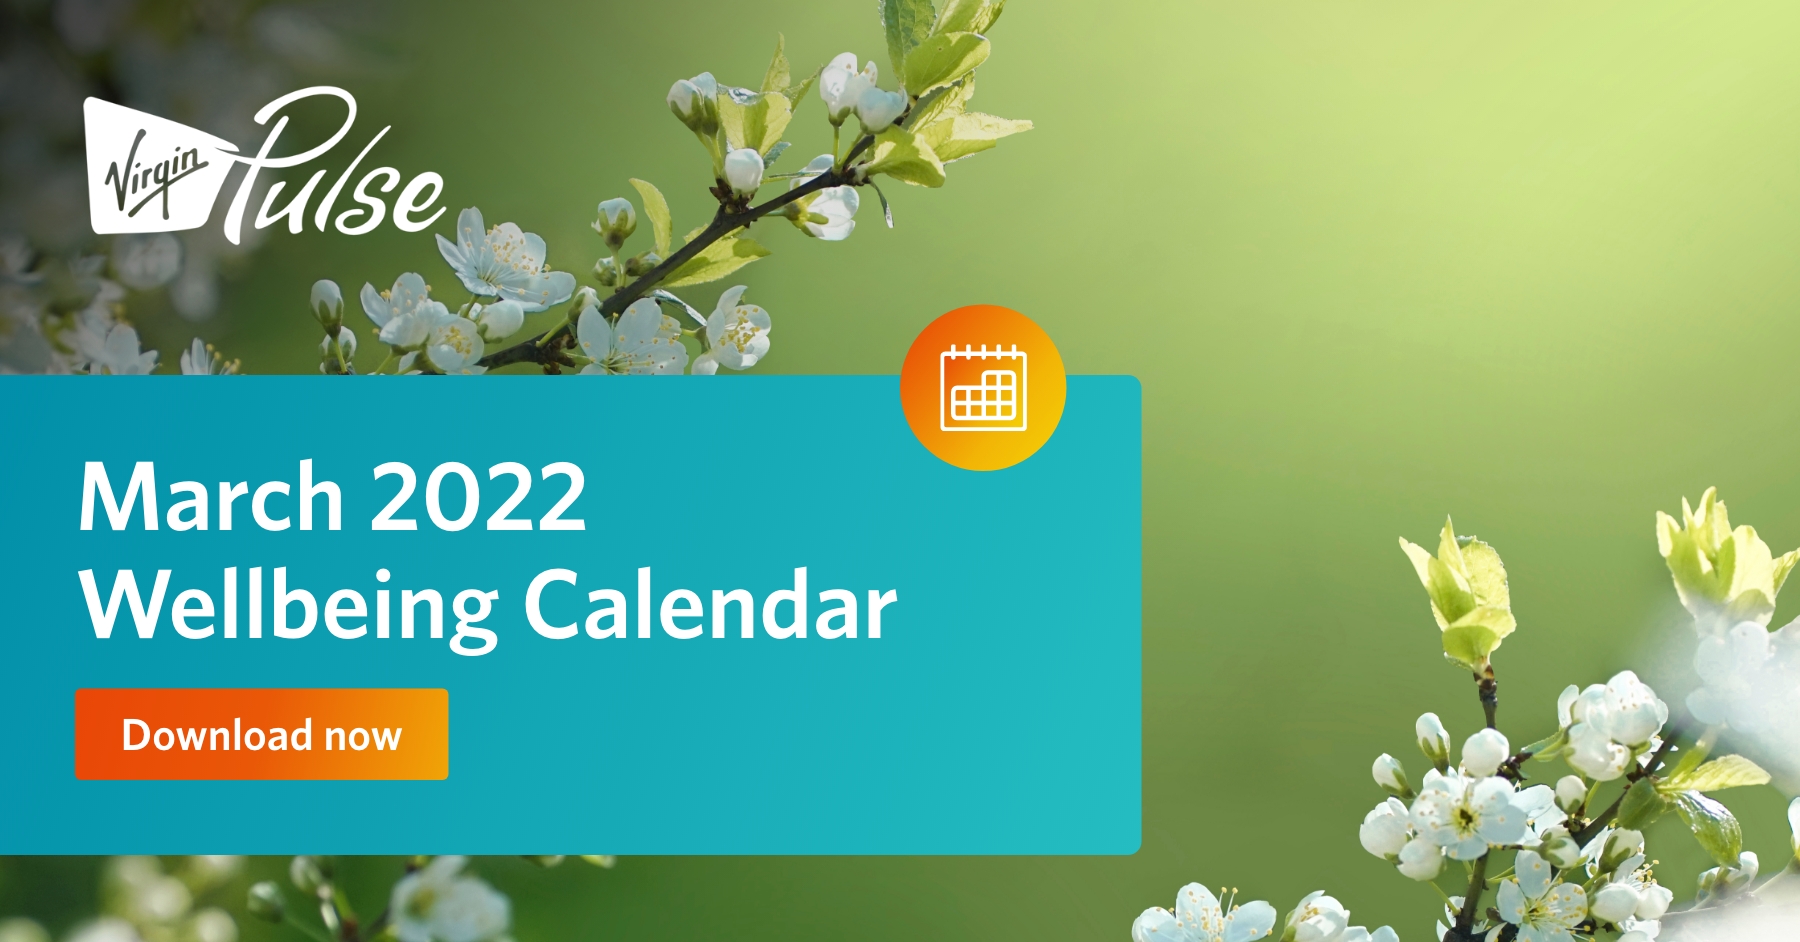 March 2022 Wellbeing Calendar Virgin Pulse